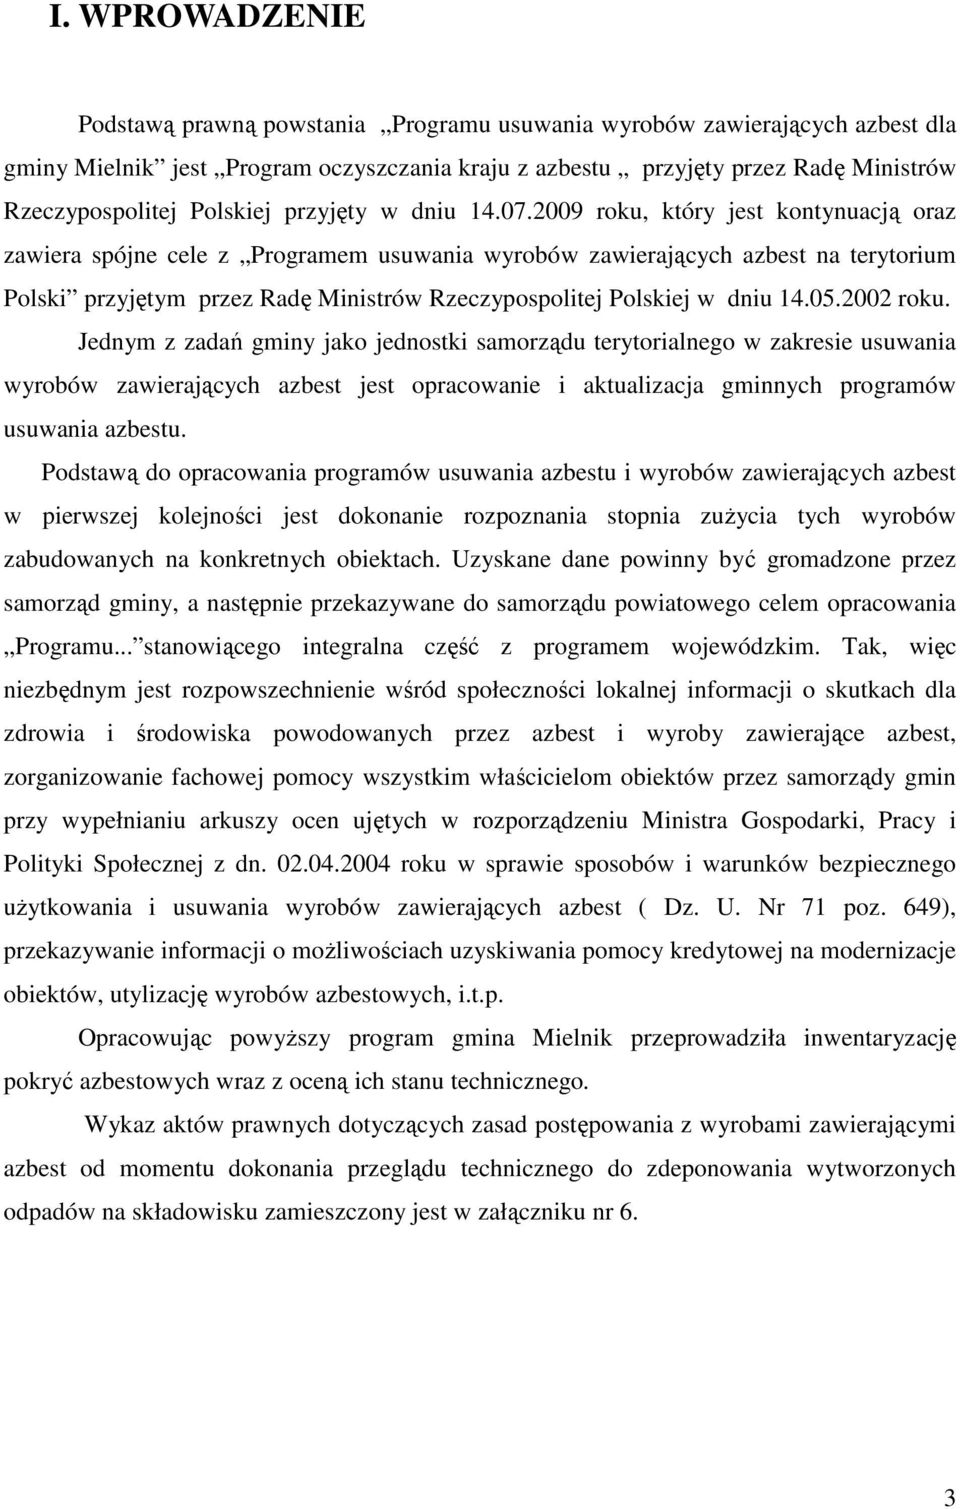 2009 roku, który jest kontynuacją oraz zawiera spójne cele z Programem usuwania wyrobów zawierających azbest na terytorium Polski przyjętym przez Radę Ministrów Rzeczypospolitej Polskiej w dniu 14.05.